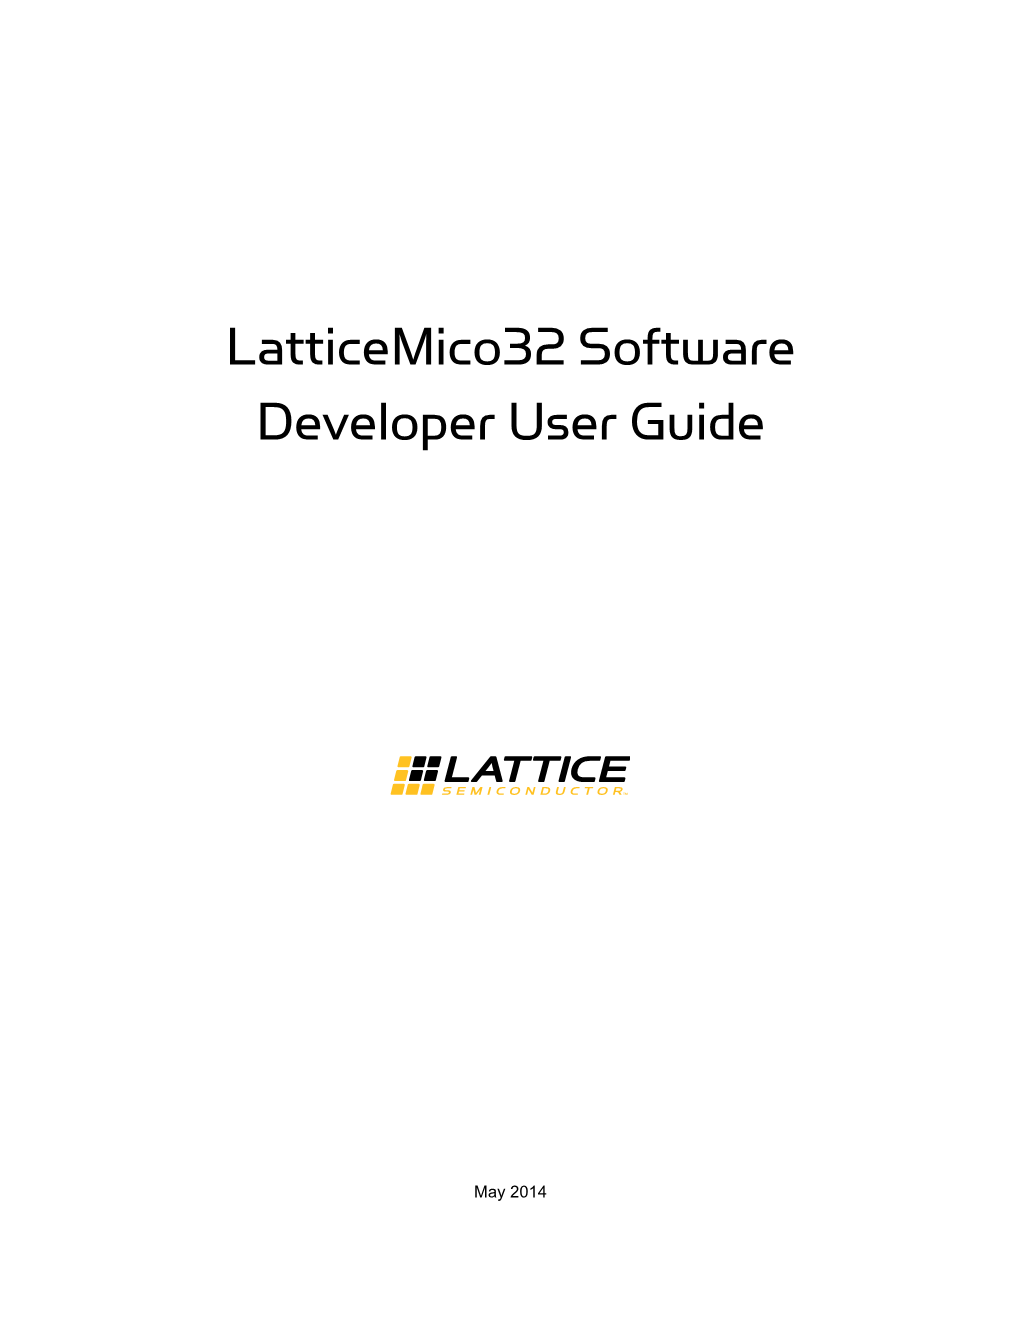 Latticemico32 Software Developer User Guide